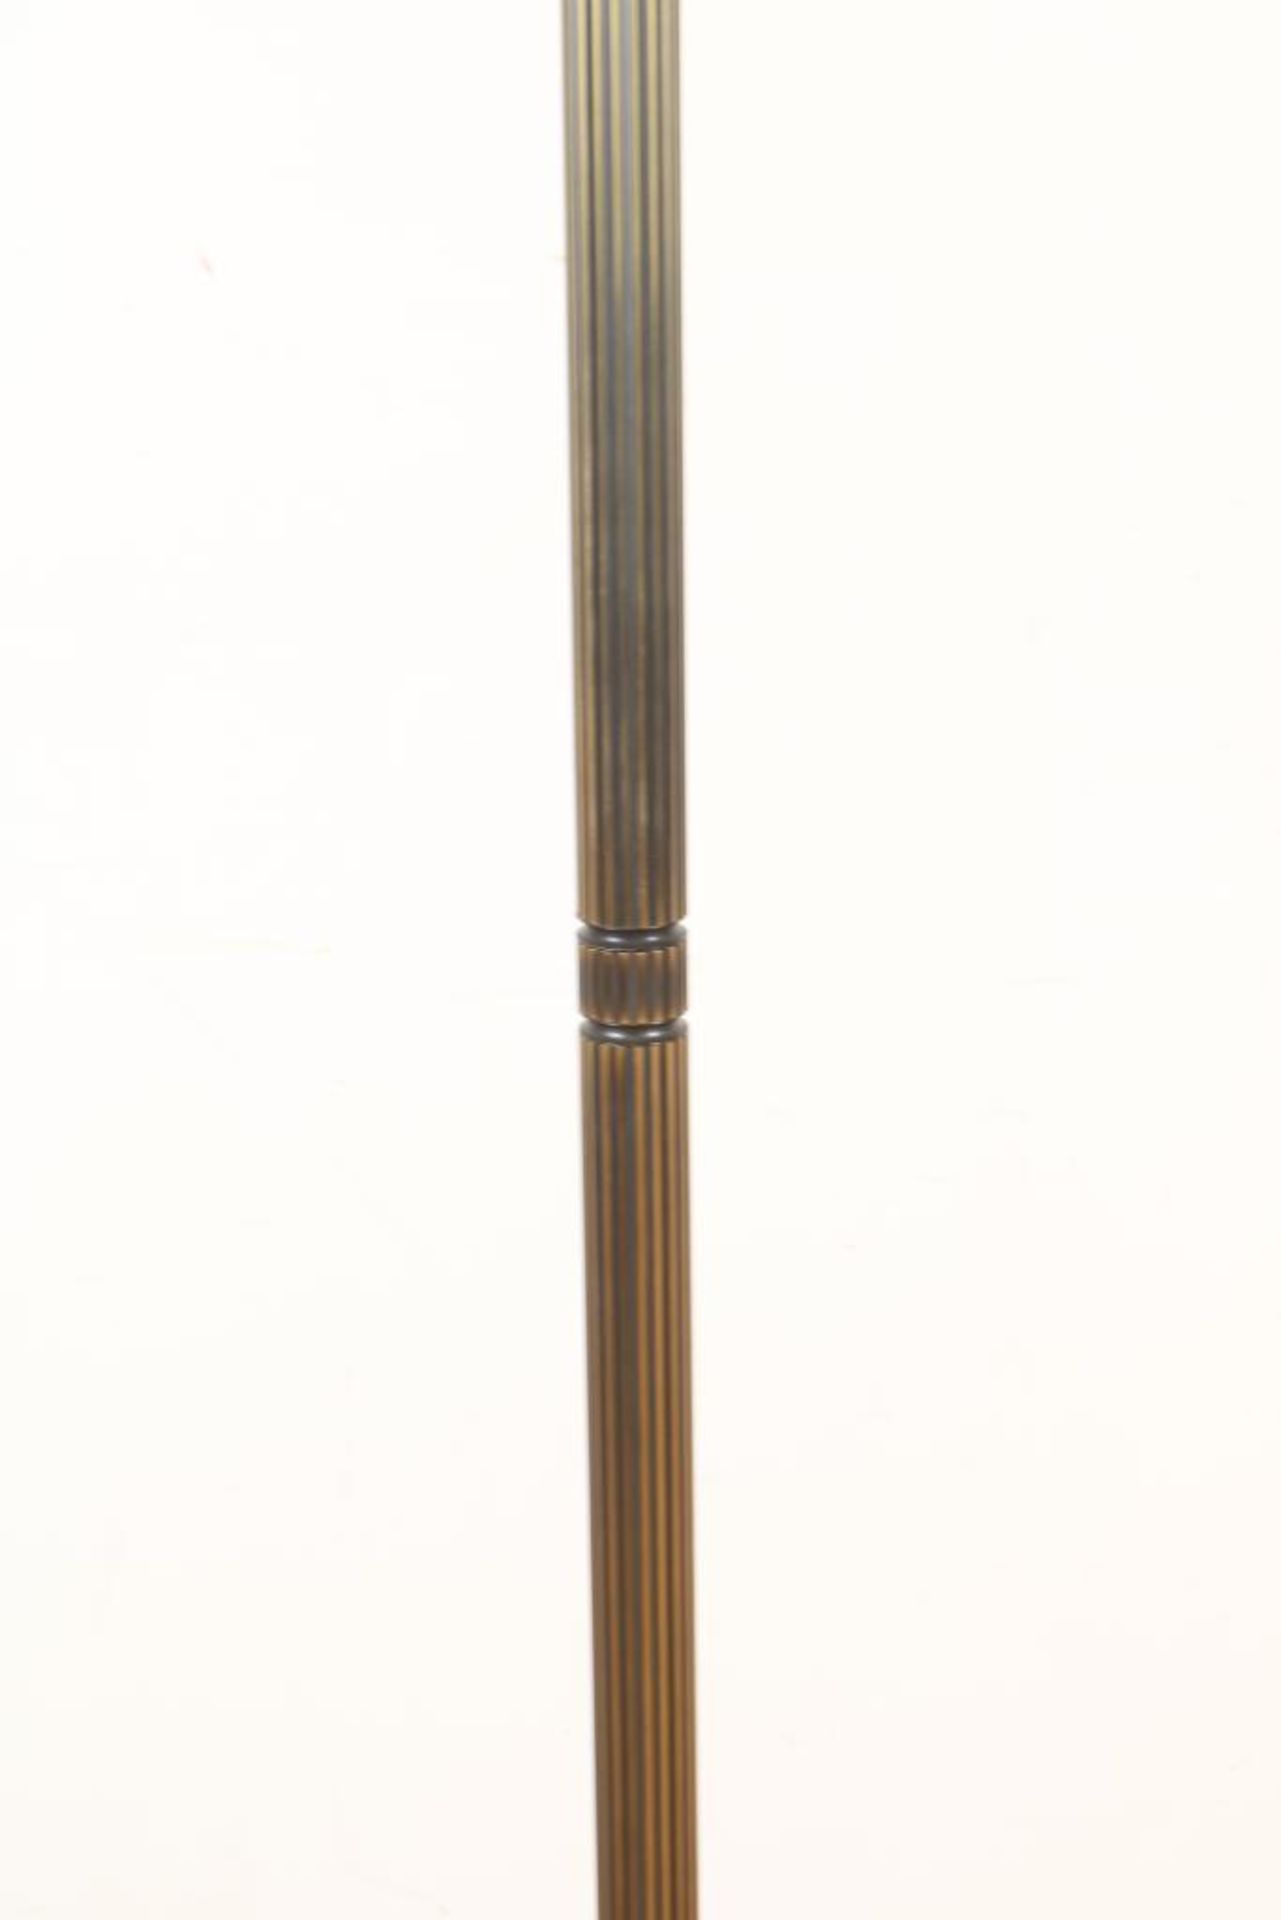 Bronzen Art Deco-stijl vloerlamp - Image 3 of 4